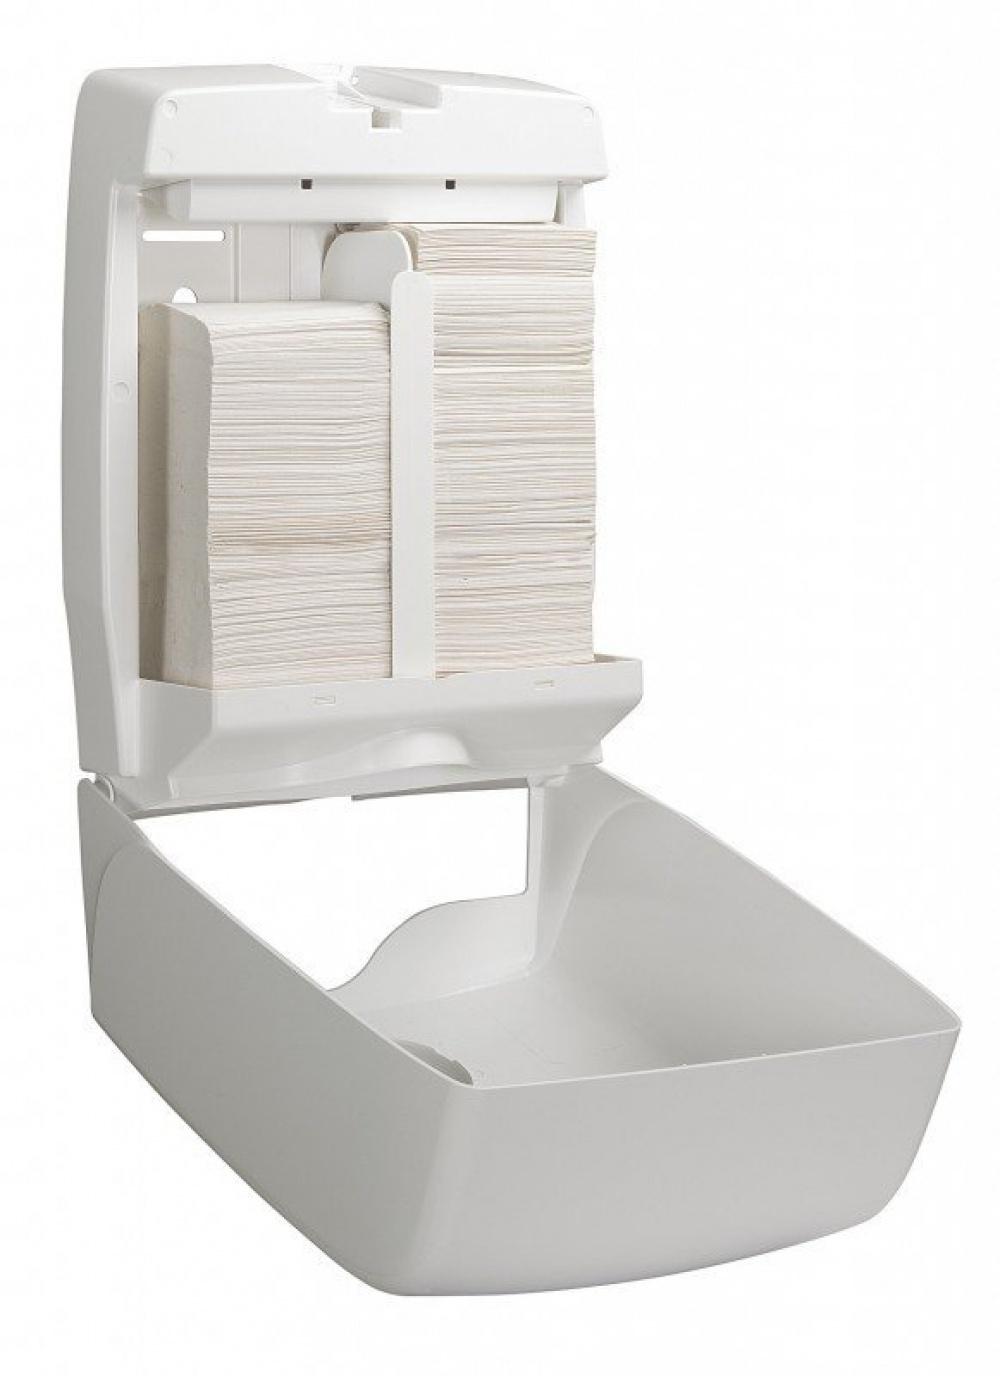 Пластиковый диспенсер для туалетной бумаги в пачках больной емкости Aquarius*